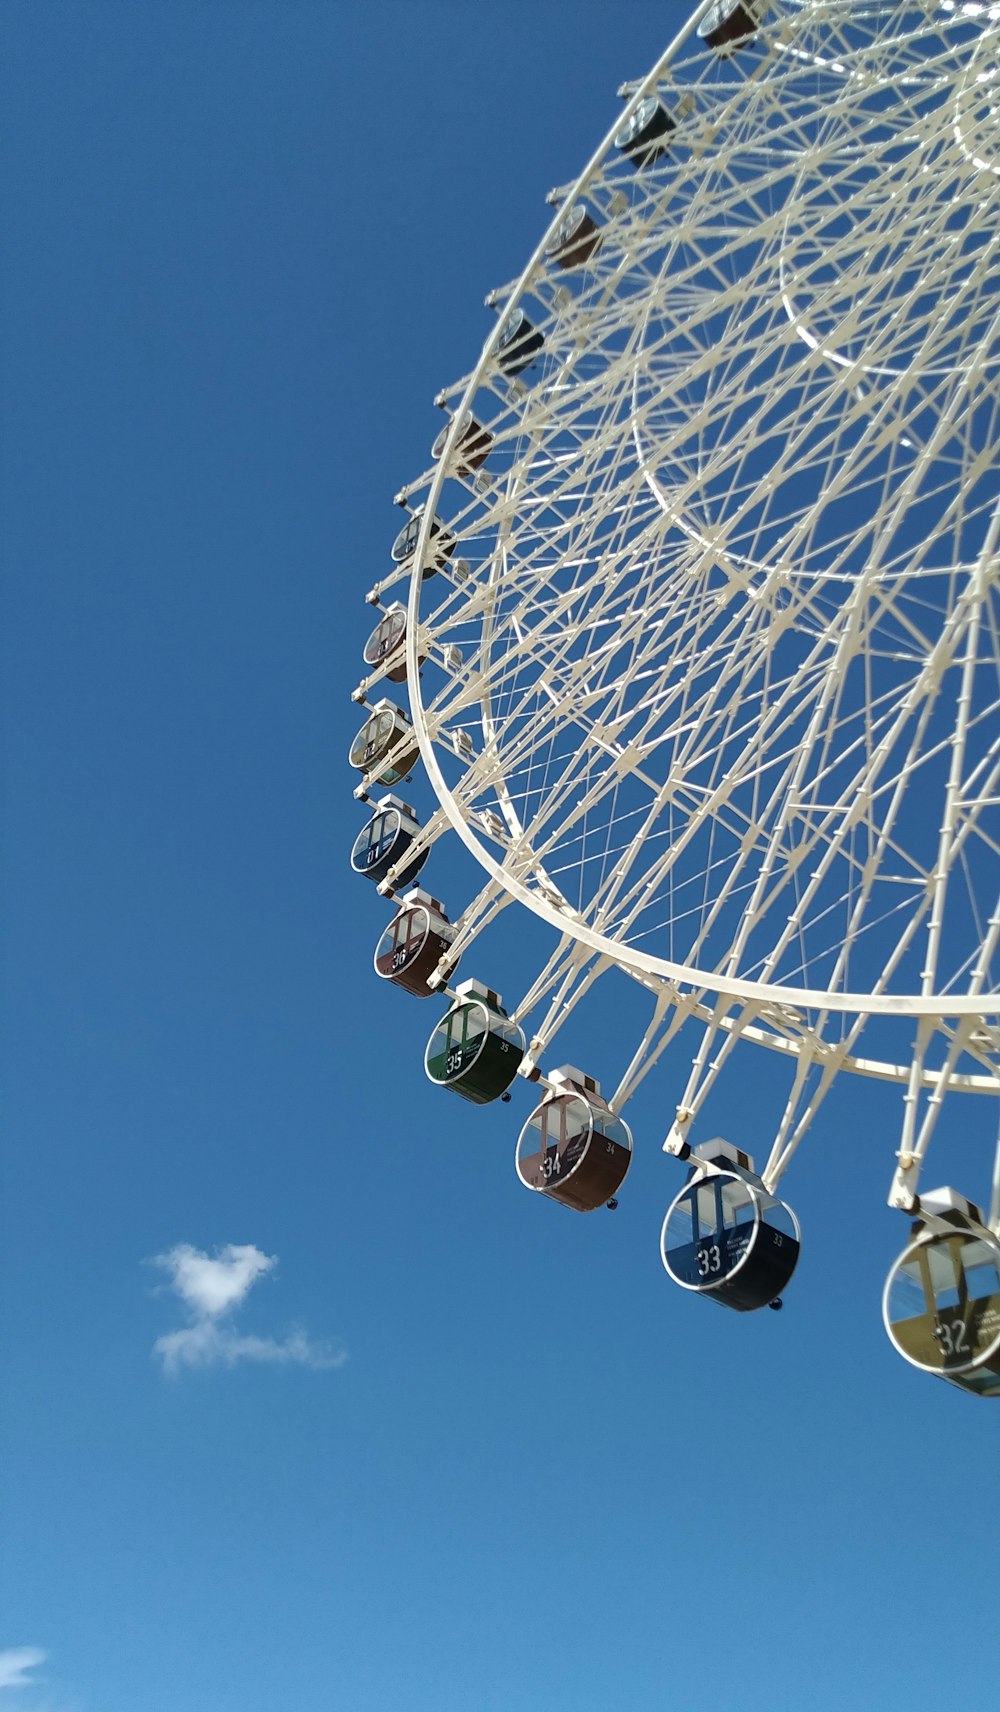 a ferris wheel against a blue sky